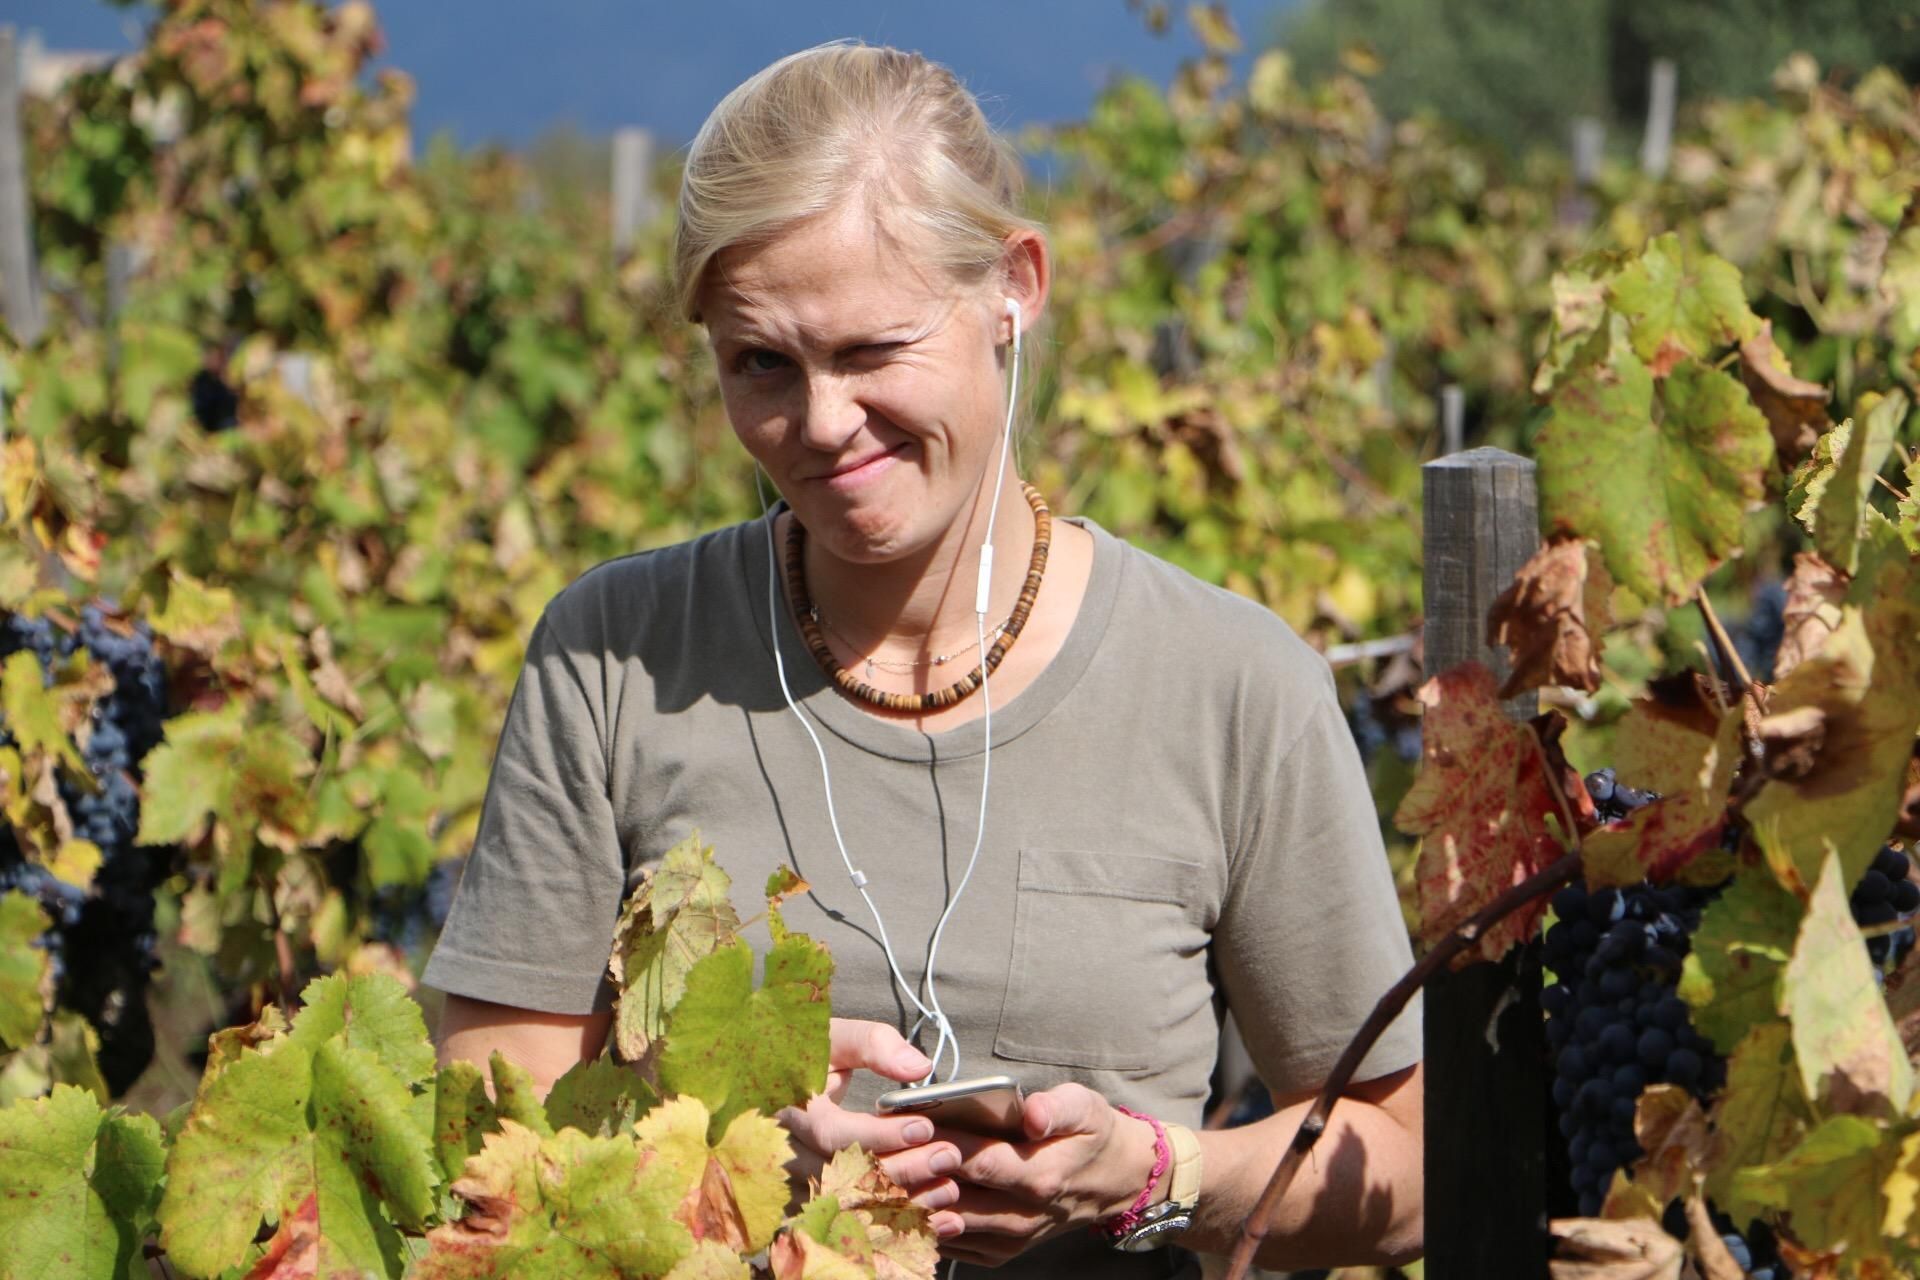 Winemaker Anne-Louise Mikkelsen